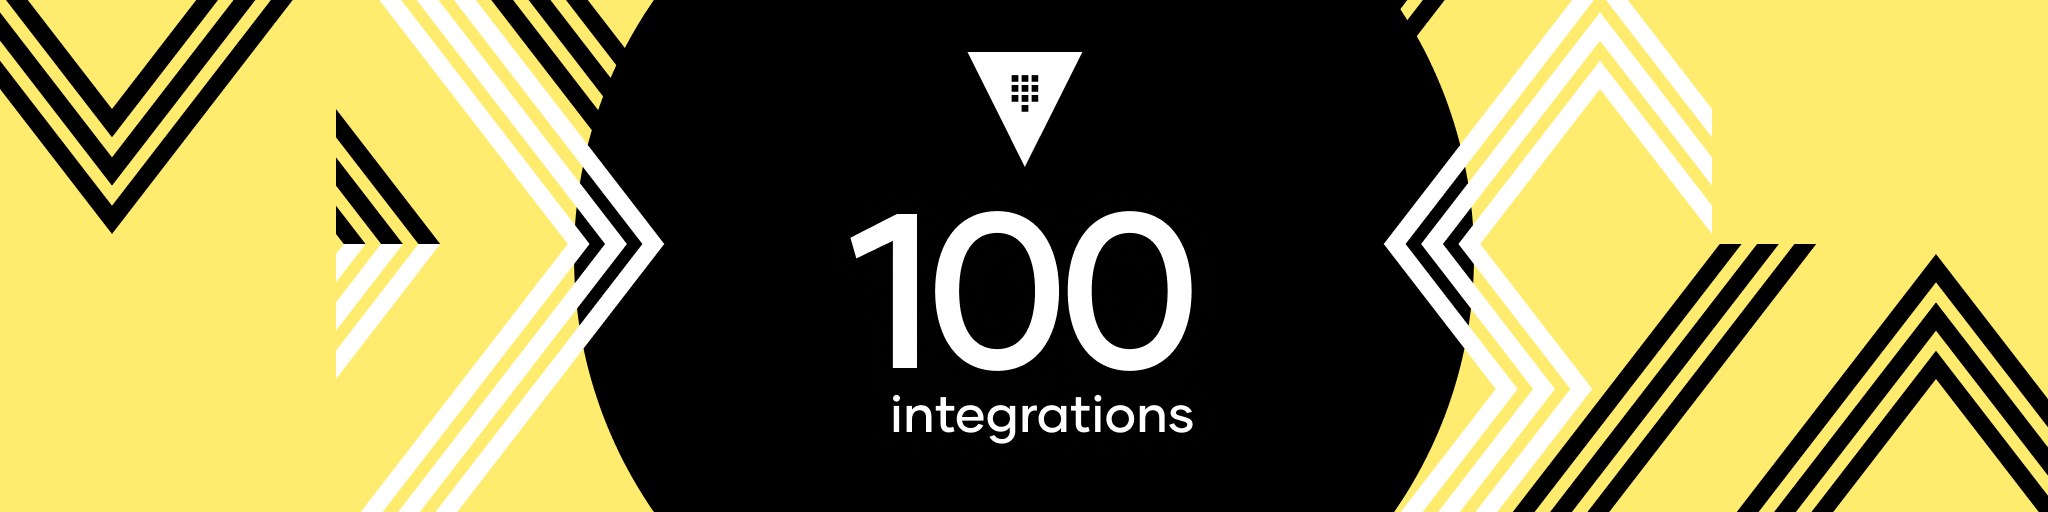 Vault 100 integrations banner